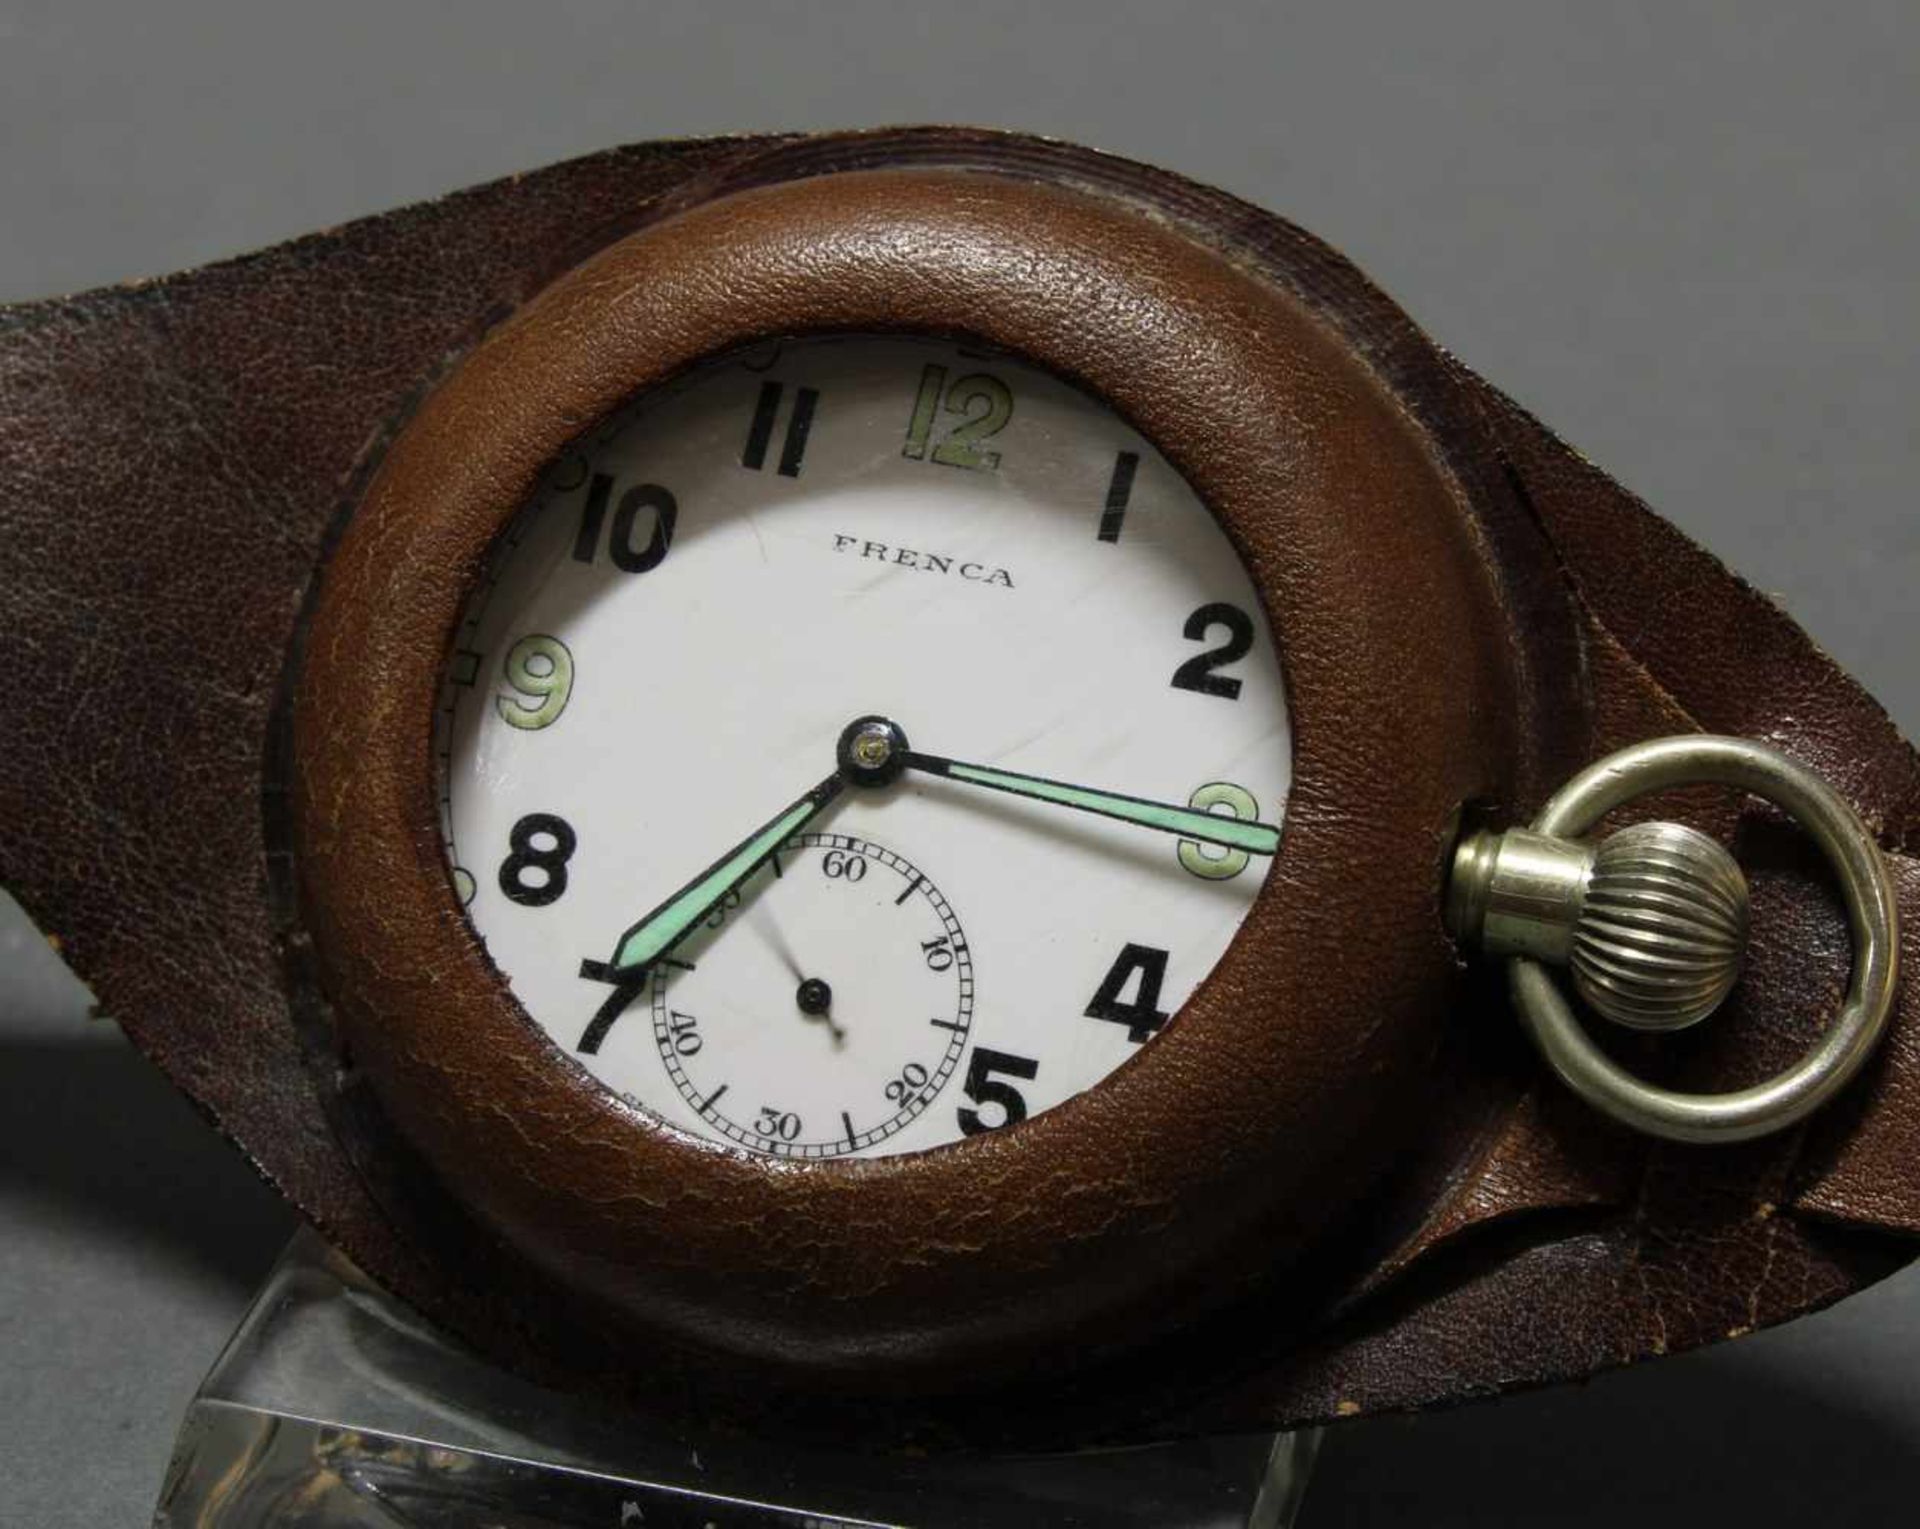 Beobachter-Uhr, mit Lederband, 1930er/40er Jahre, wohl England, Taschenuhr bez. Frenca, - Bild 2 aus 4